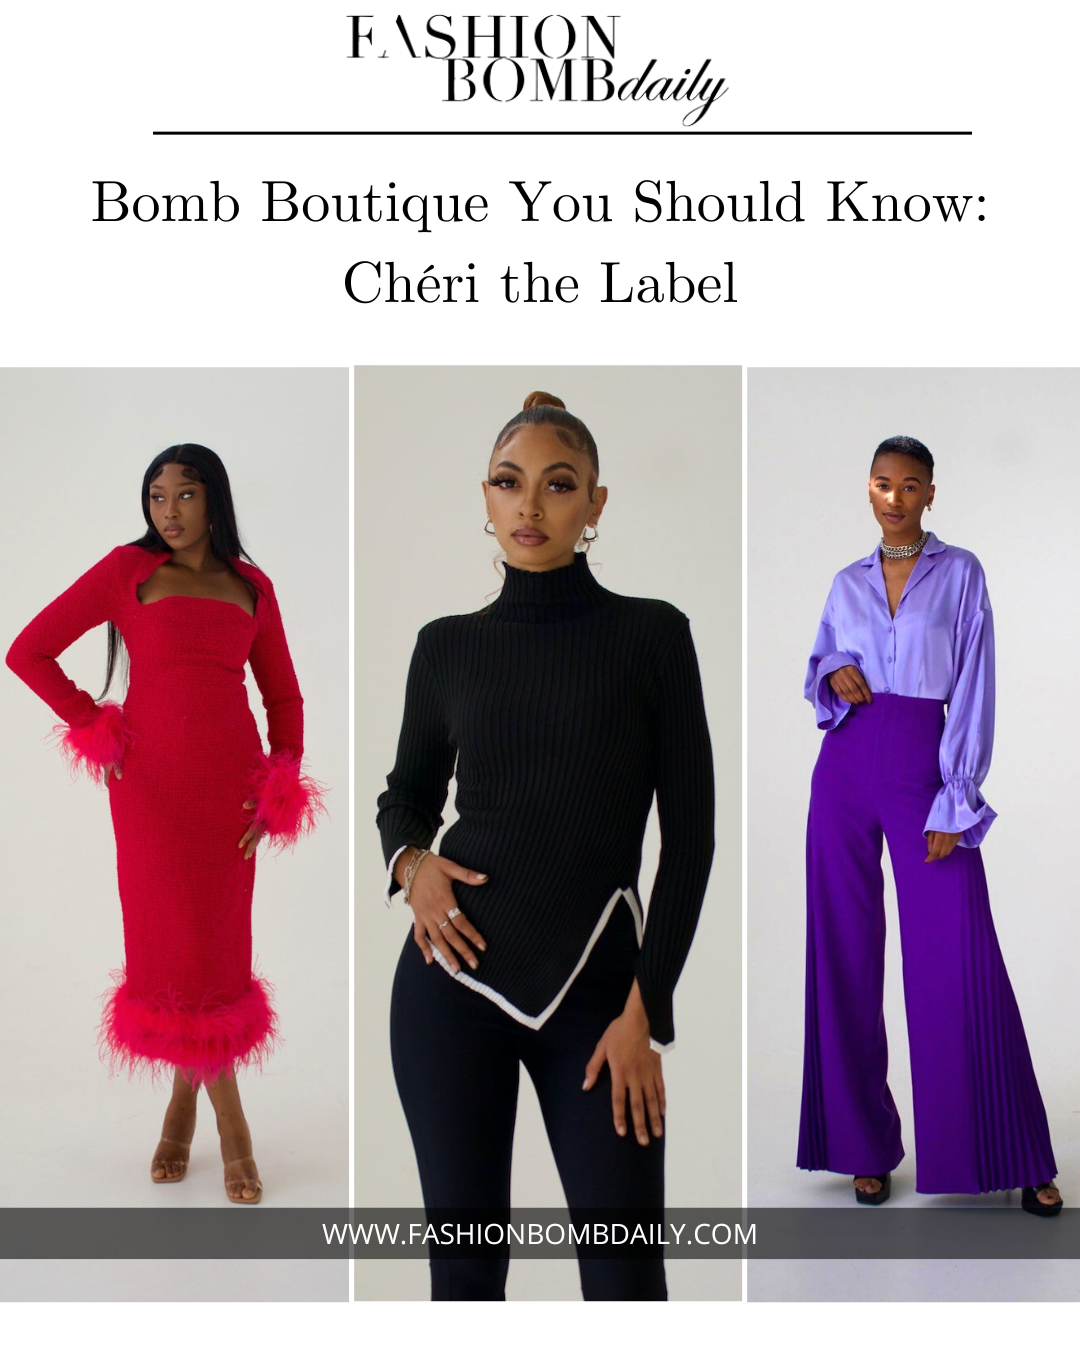 Bomb Boutique You Should Know: Chéri the Label